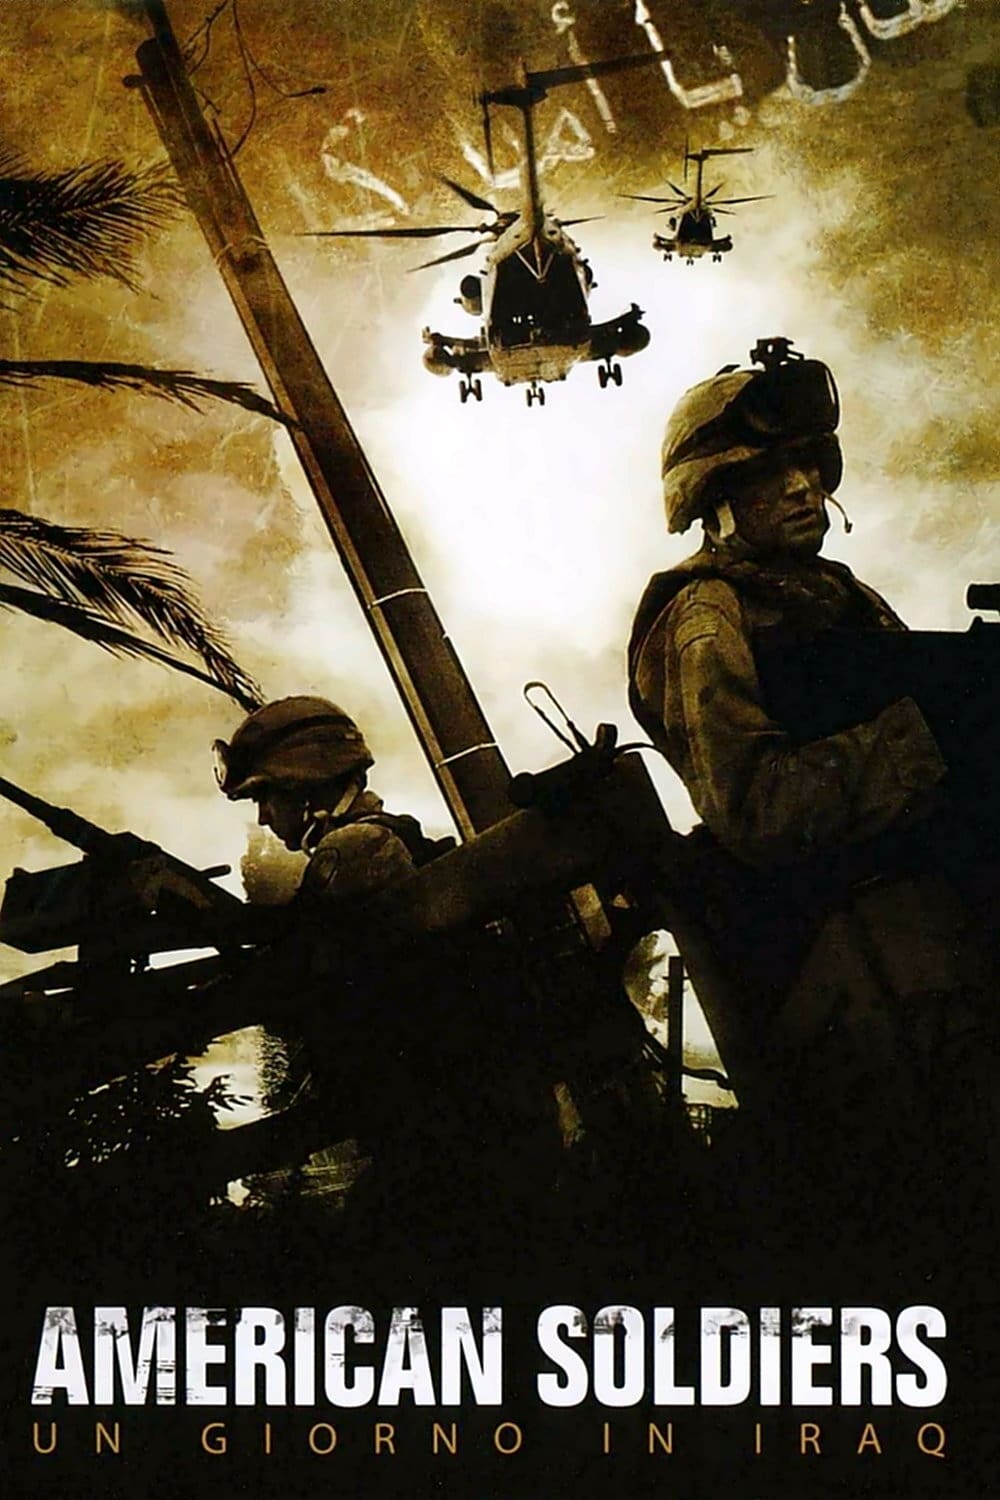 American Soldiers - Un giorno in Iraq film